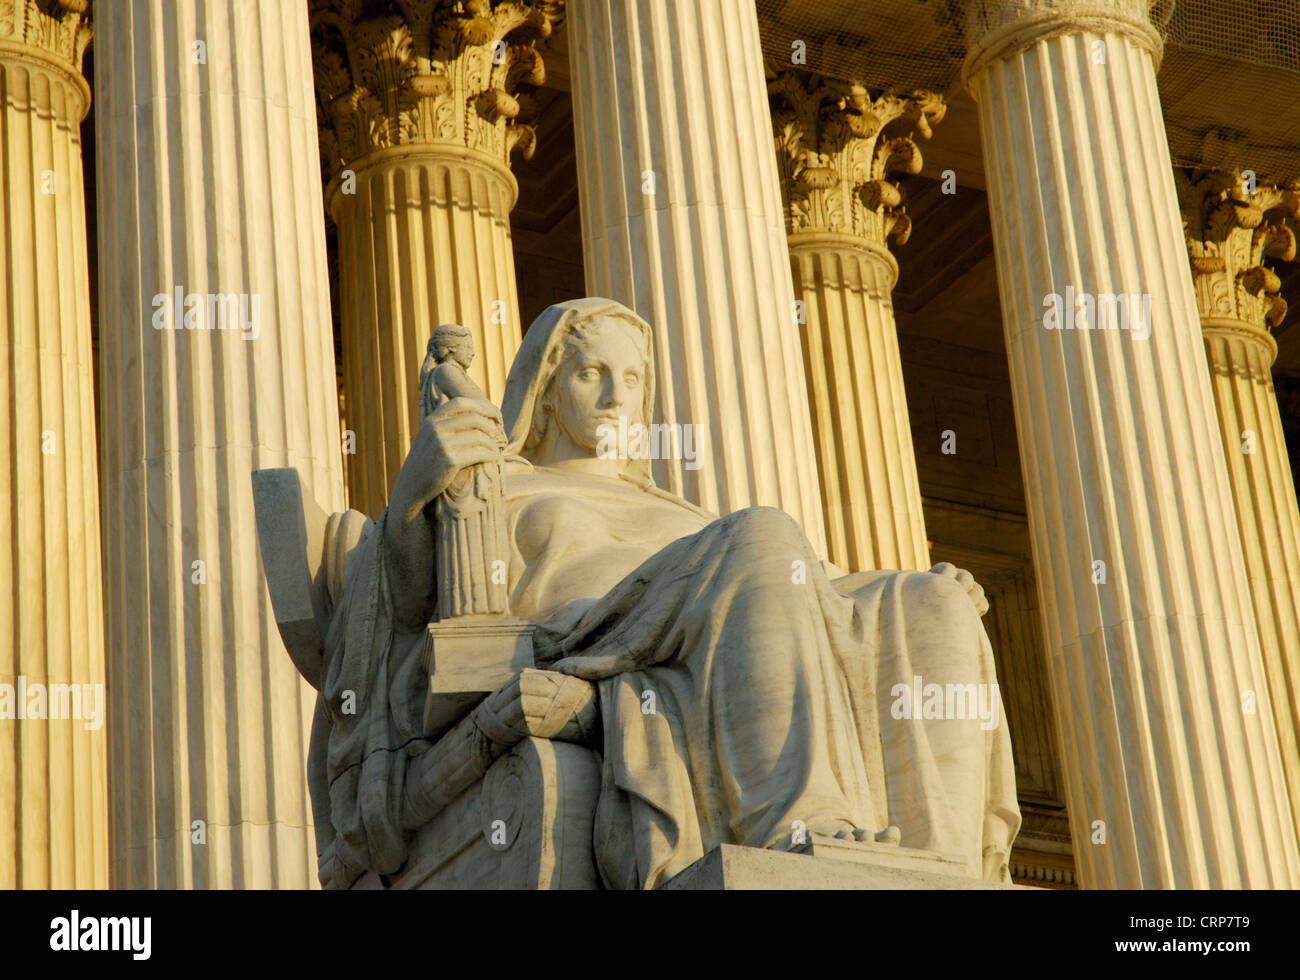 Bâtiment de la Cour suprême des États-Unis avec la contemplation de la Justice statue Banque D'Images